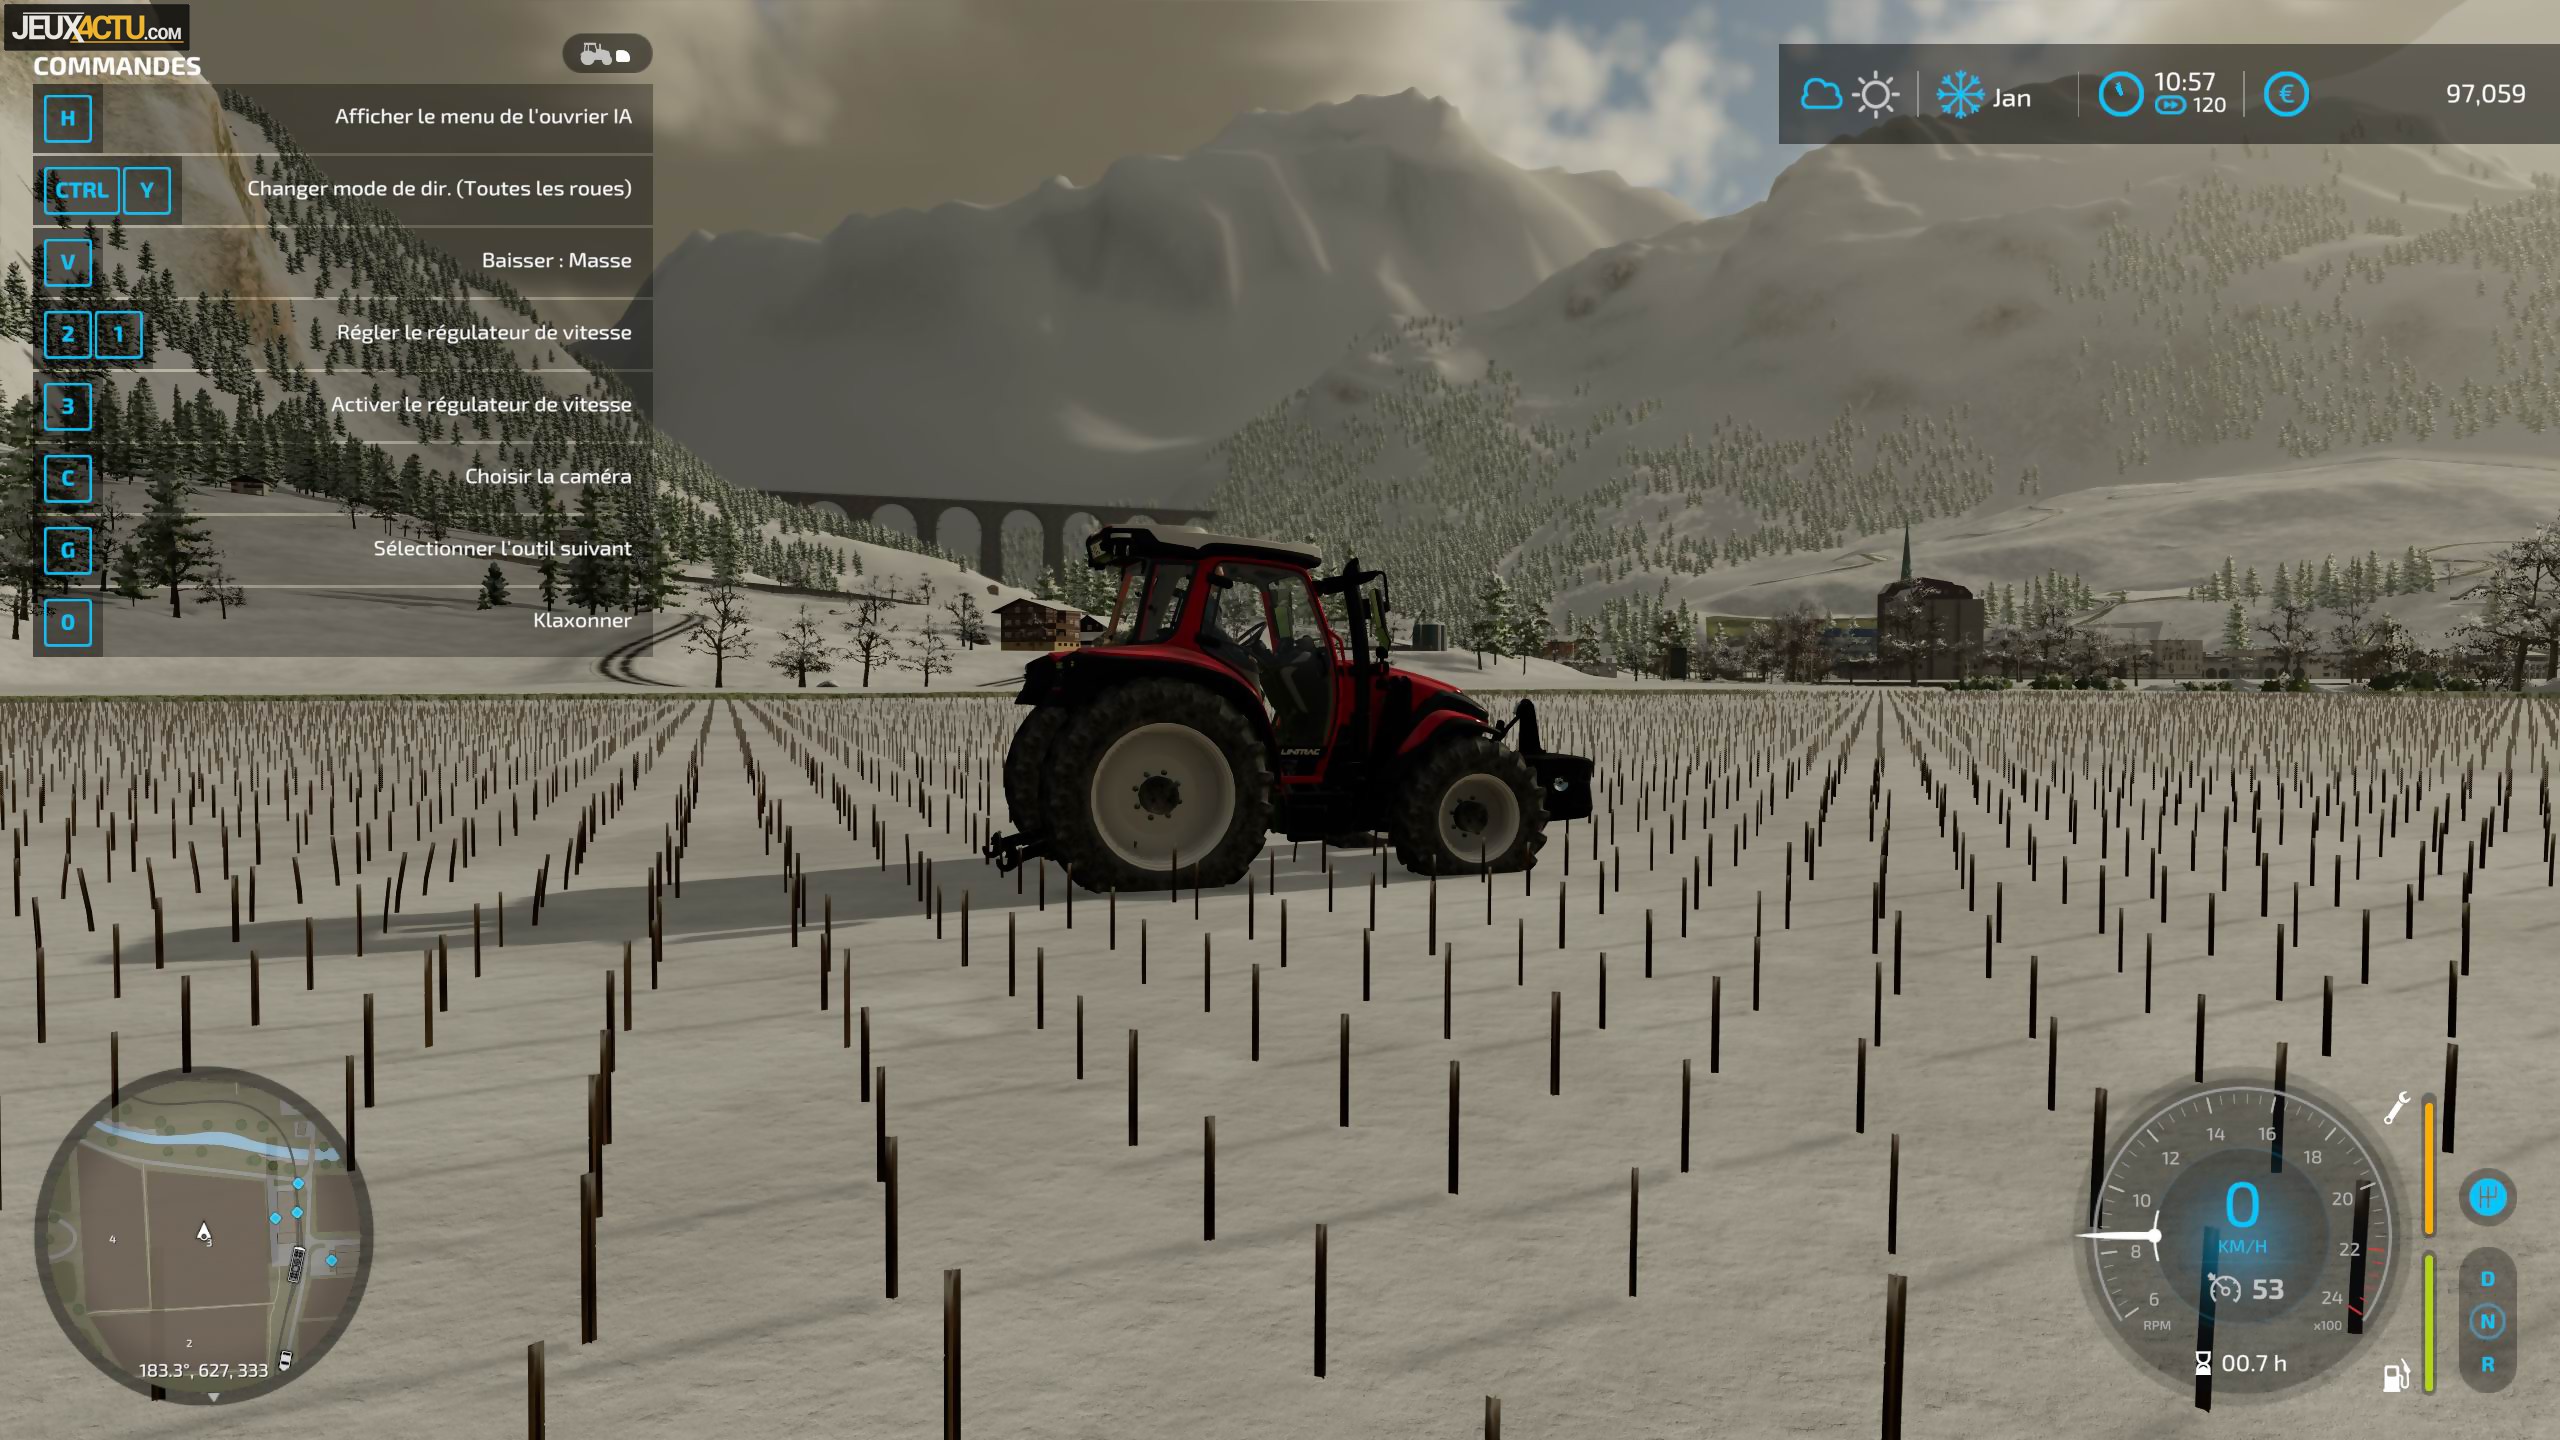 Farming Simulator 22 cartonne dans le monde, des chiffres impressionnants